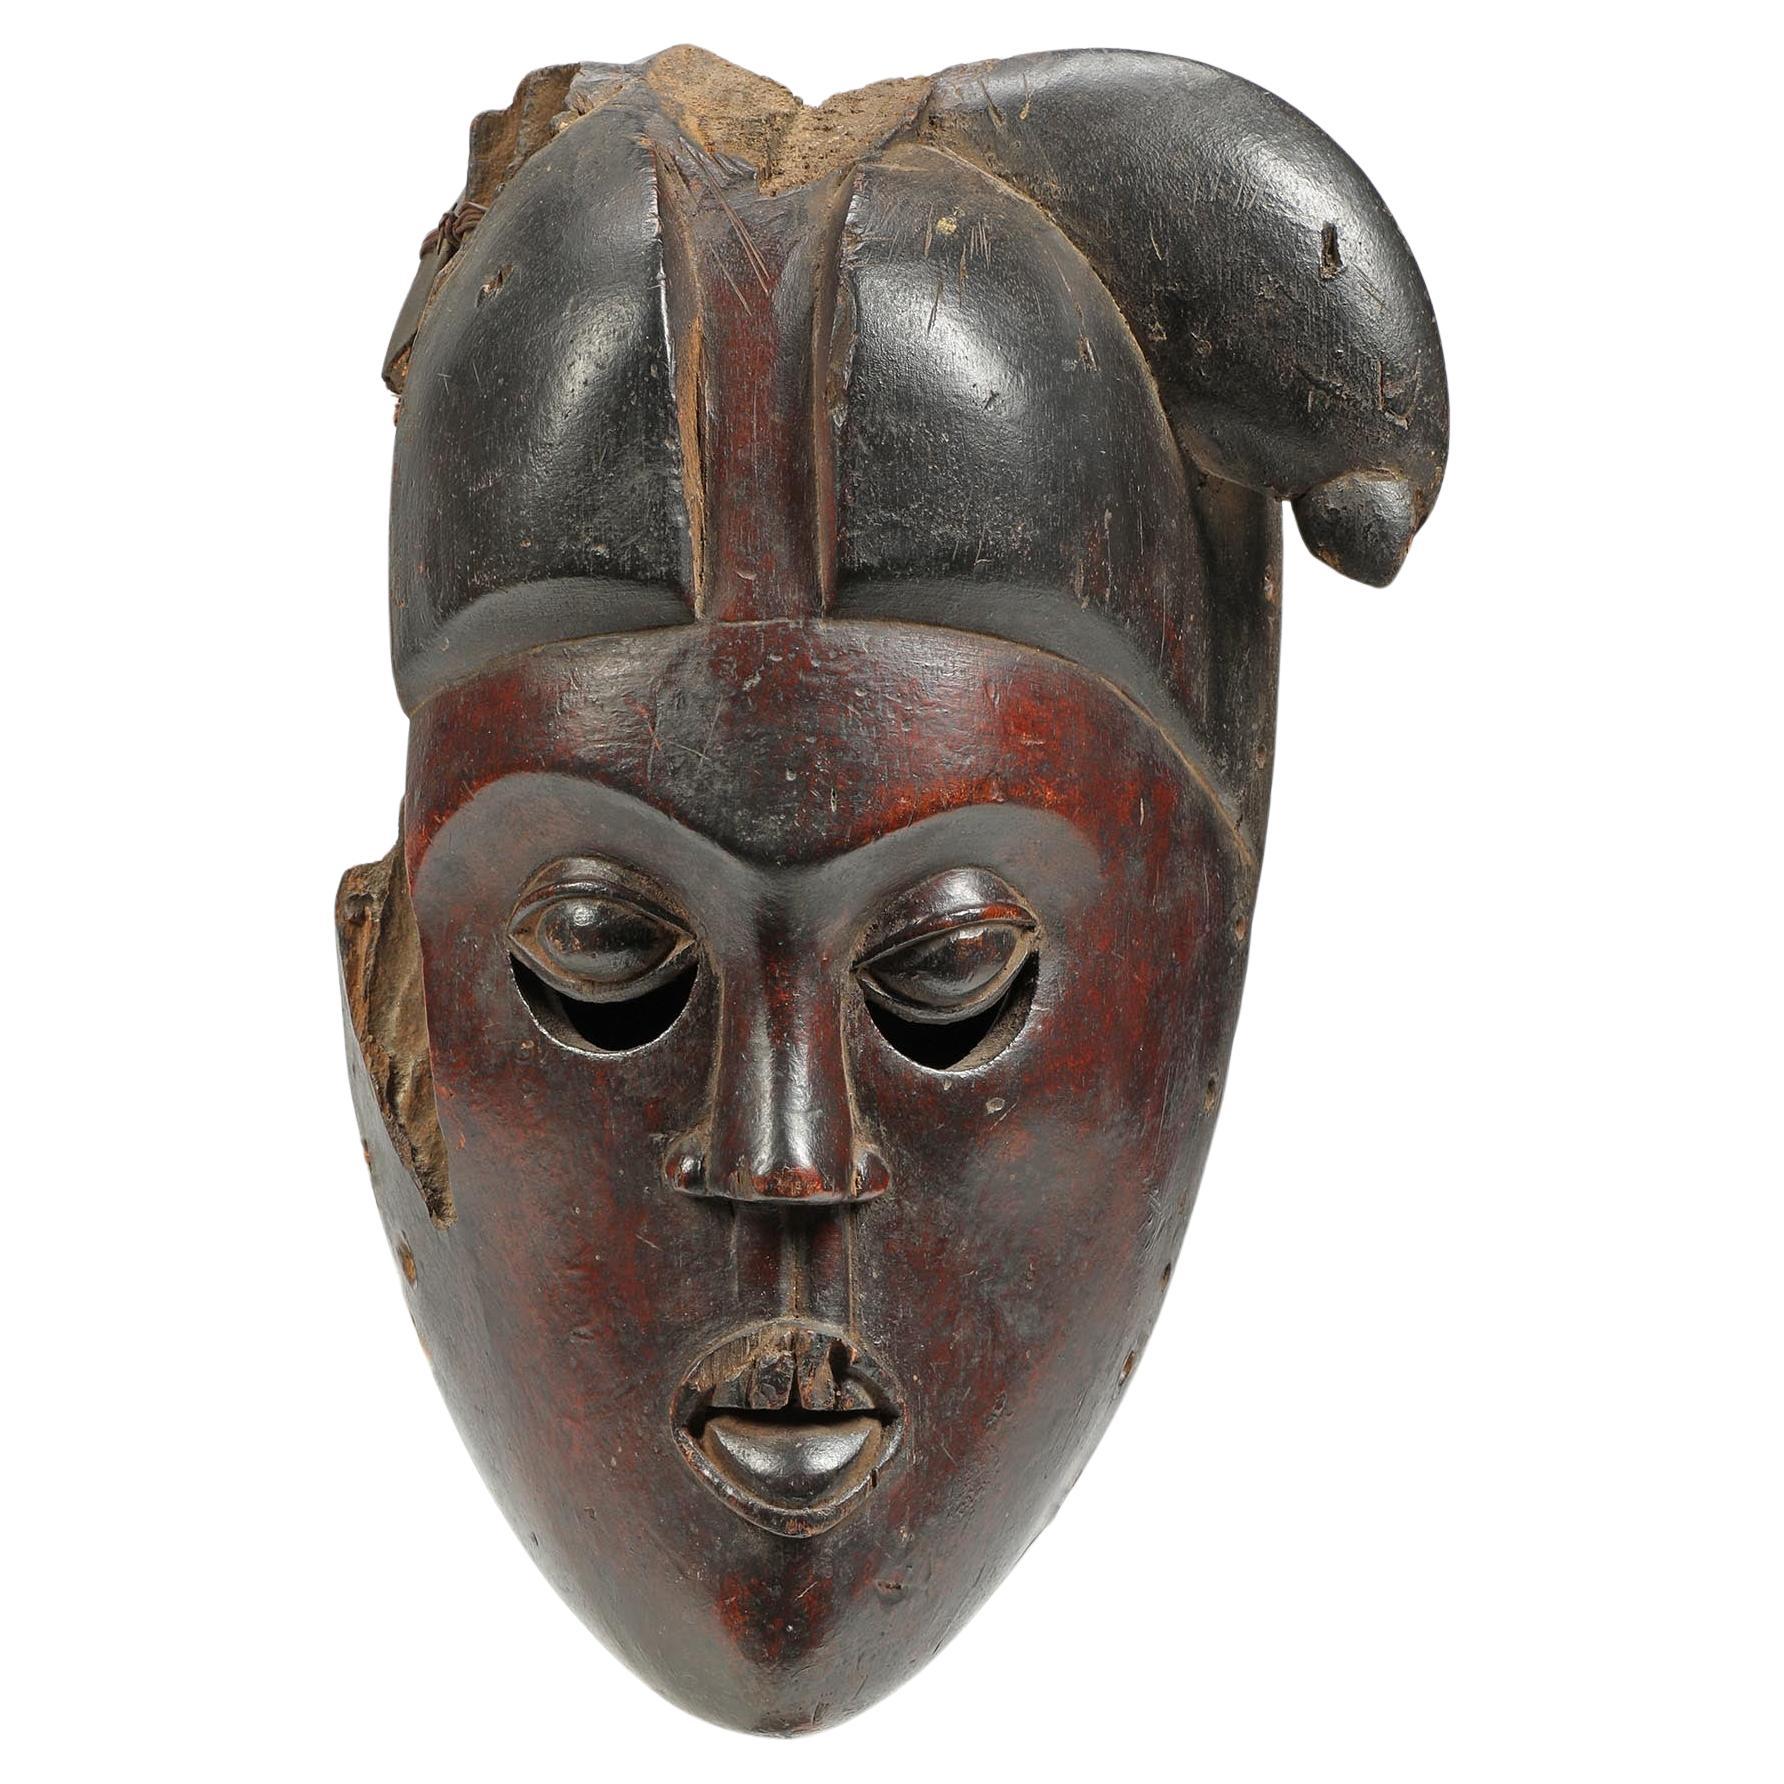 Fragmento de máscara ibibio antigua, rostro rojo oscuro, ojos expresivos, África de principios del siglo XX